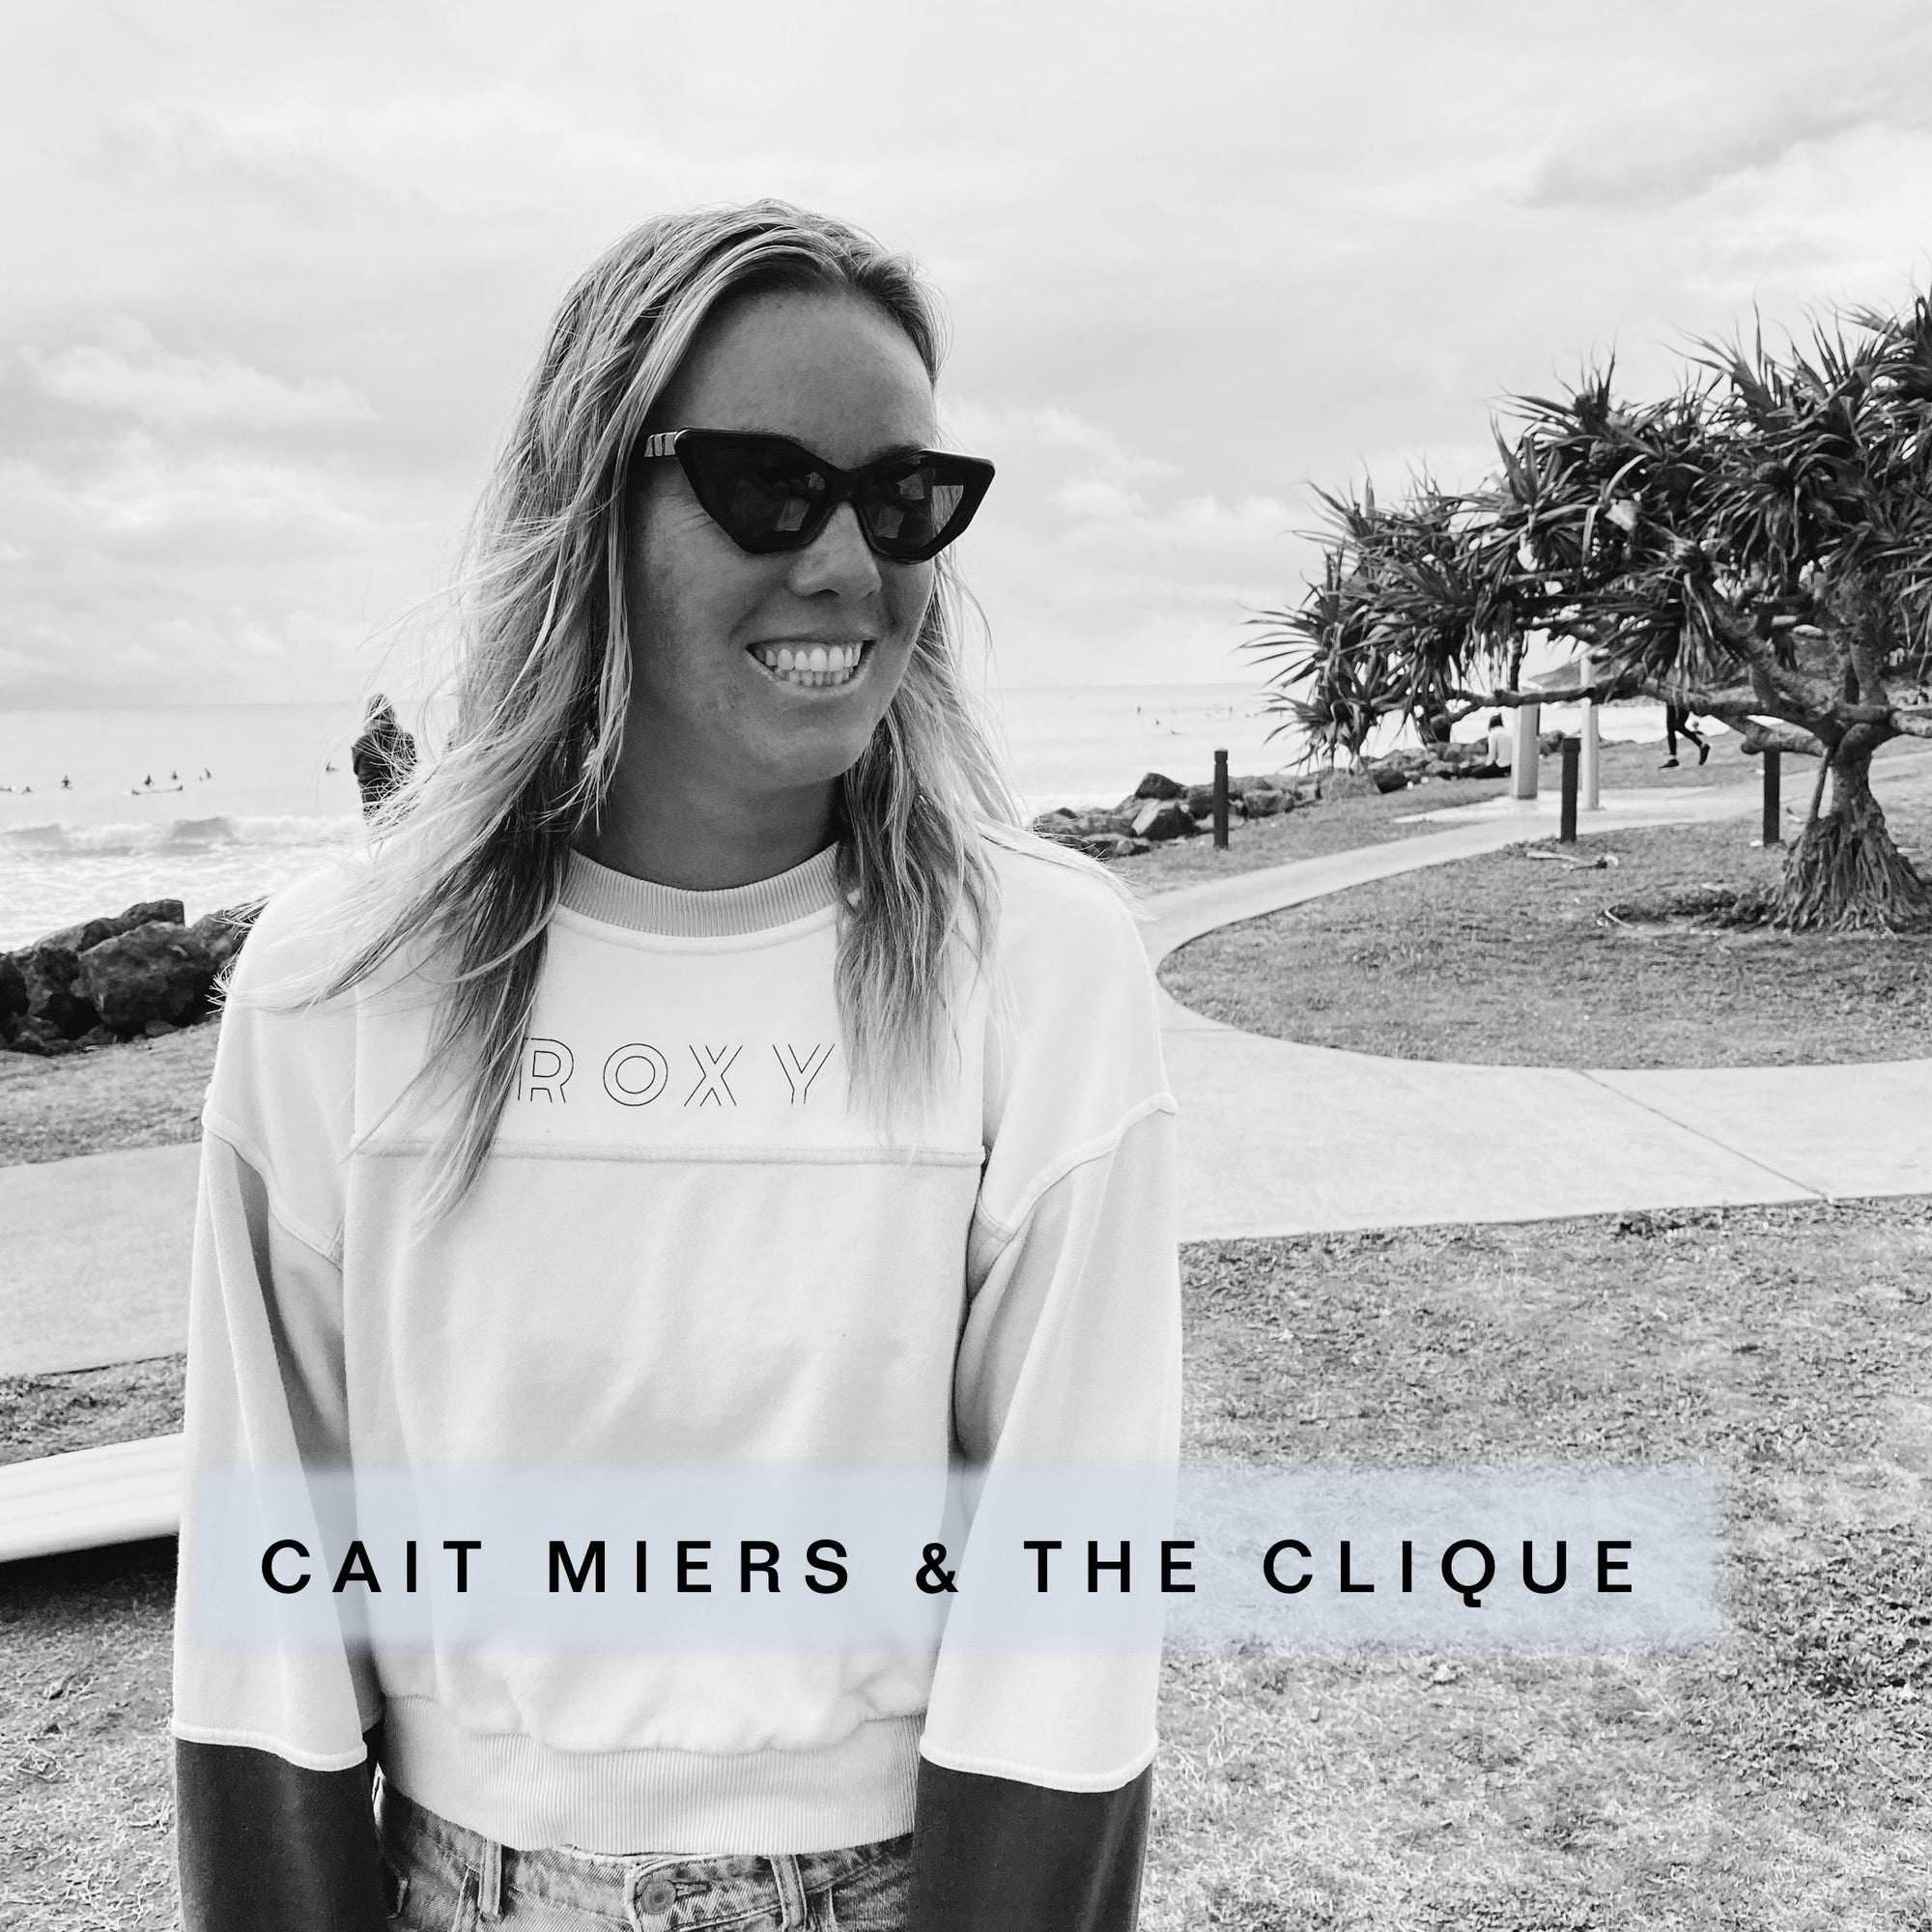 Photographer and entrepreneur Cait Miers reveals her Clique